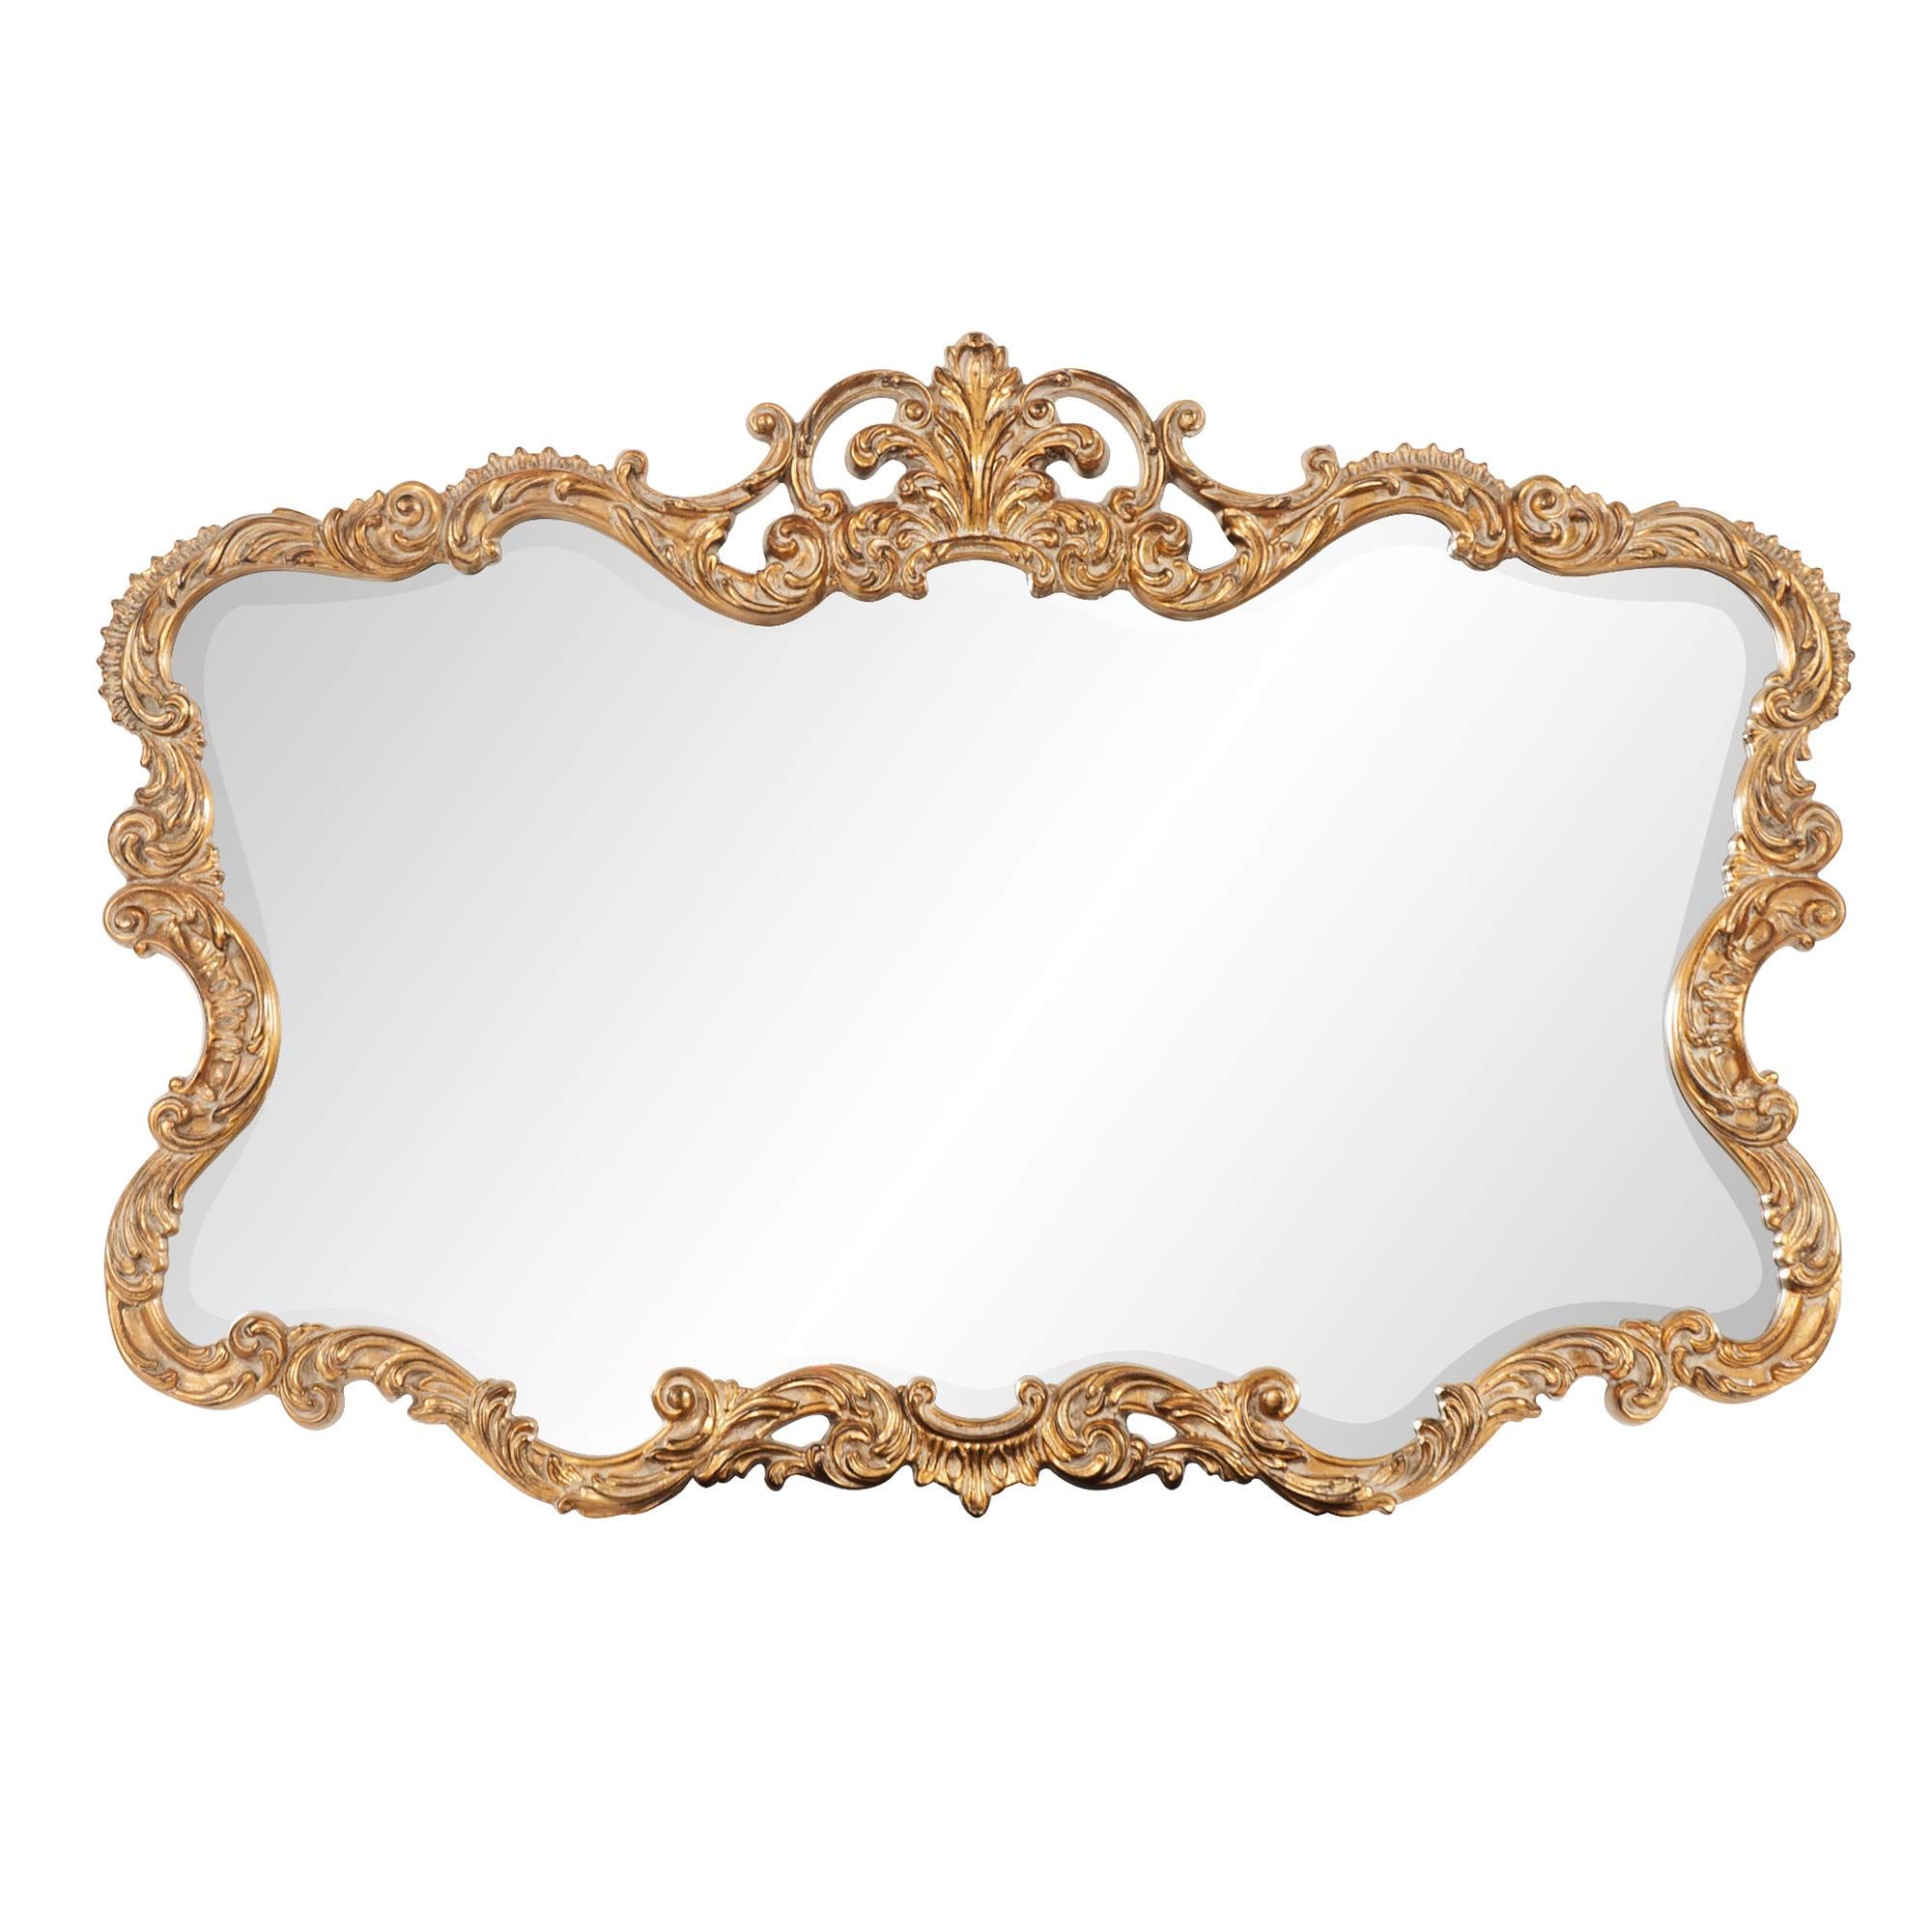 Howard Elliott Talida Mirror, Ornate Wall Focal Point, Resin Frame, Gold, 27 Inch x 38 Inch x 1 Inch | Amazon (US)